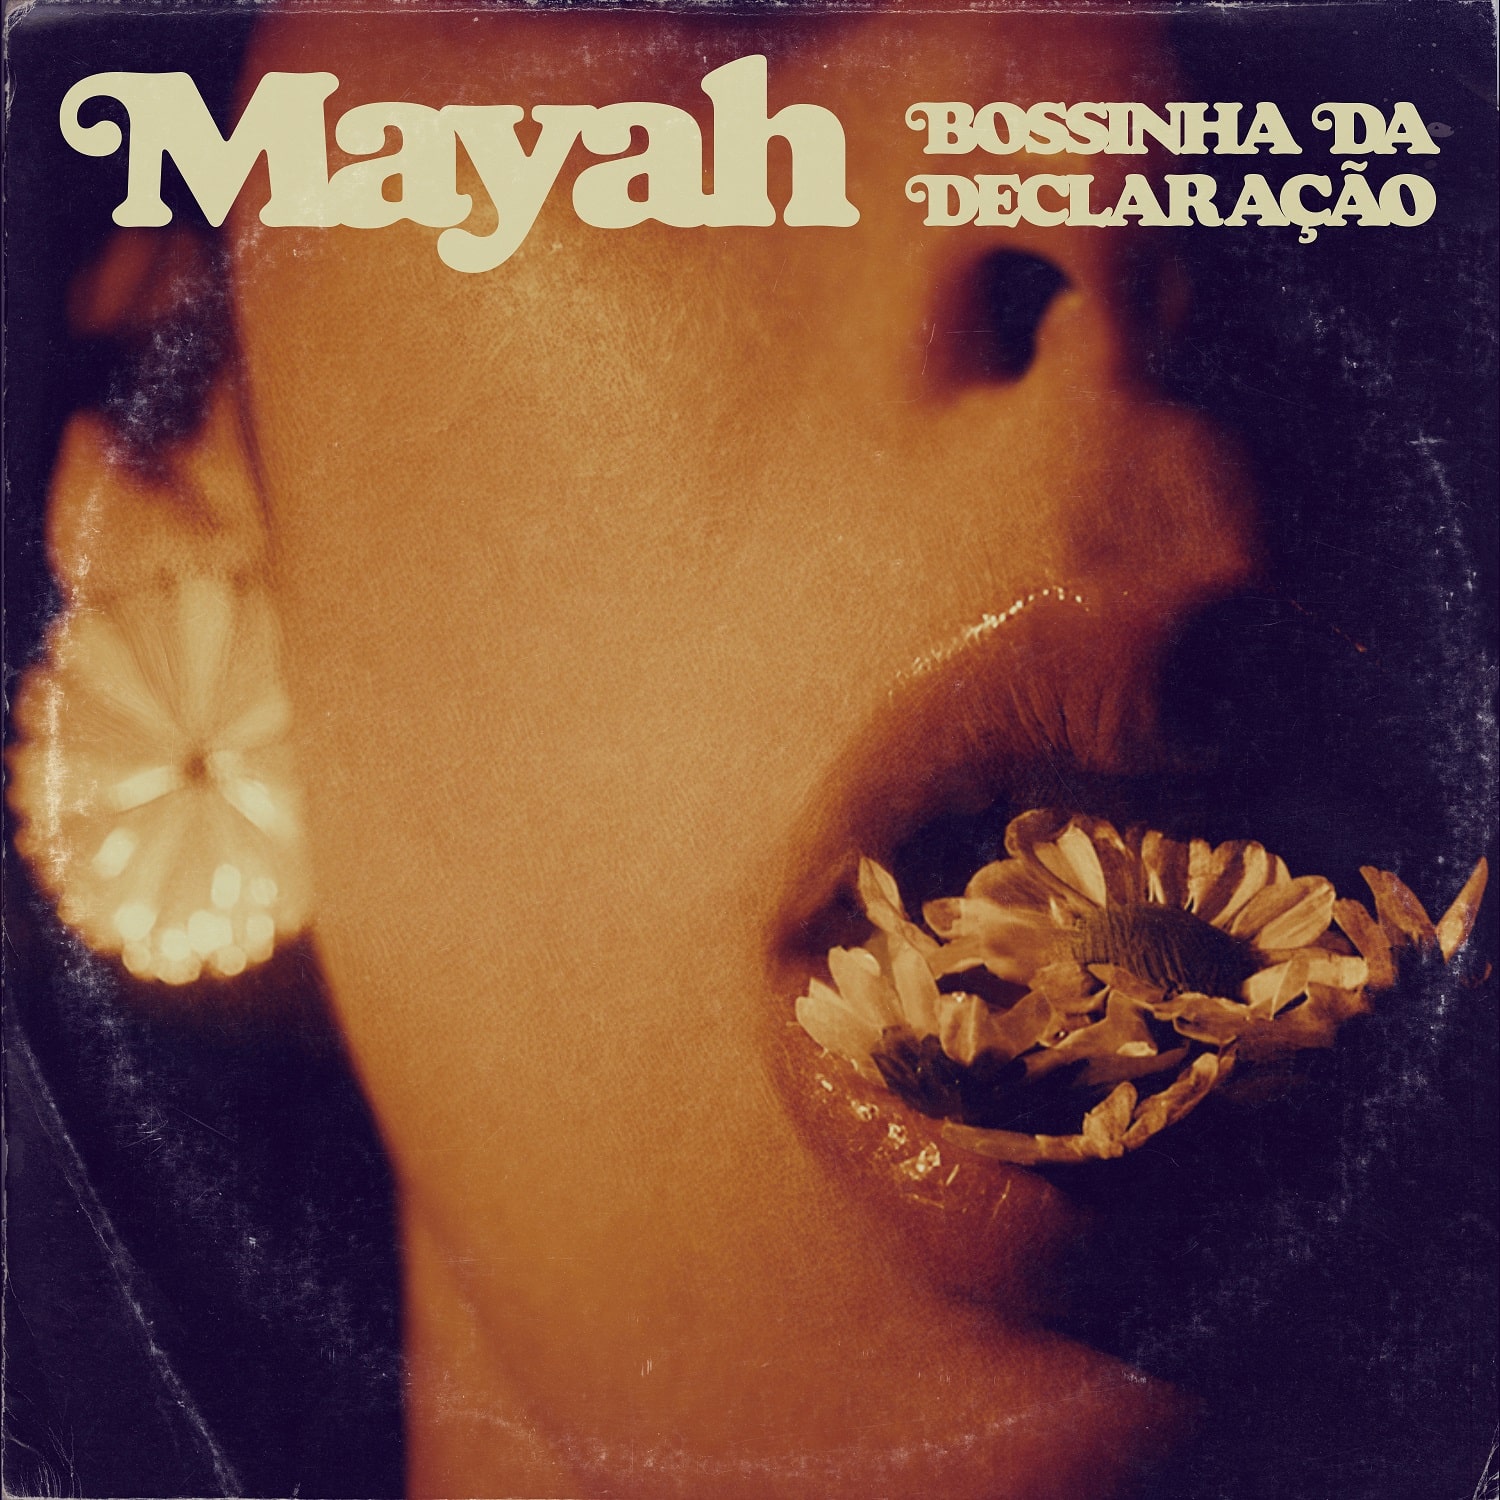 revistaprosaversoearte.com - Mayah explora as múltiplas possibilidades do amar no single 'Bossinha da Declaração'